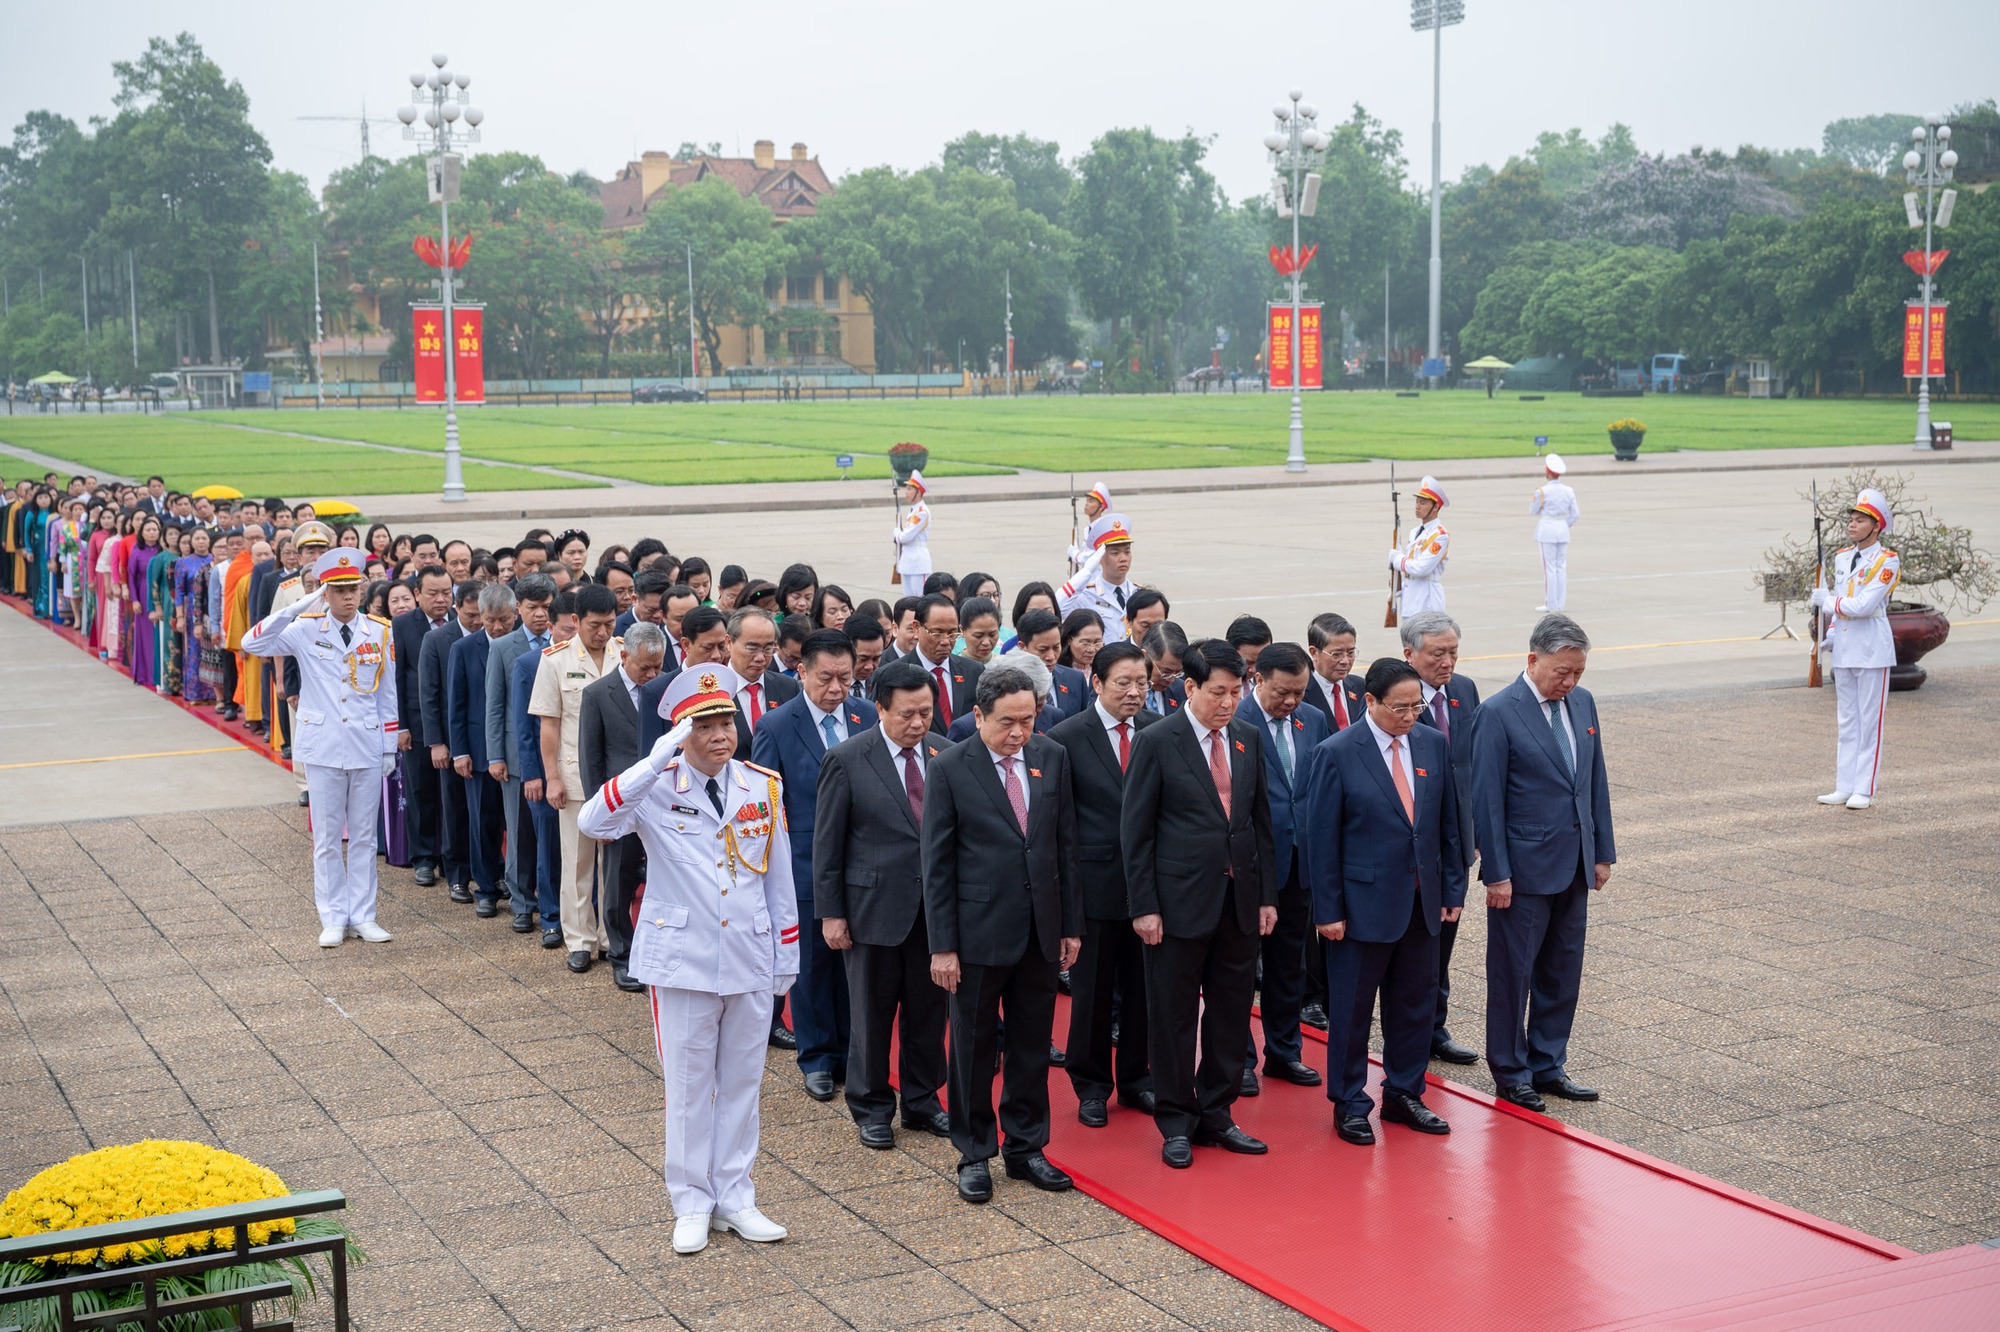 Lãnh đạo Đảng, Nhà nước và các đại biểu Quốc hội vào Lăng viếng Chủ tịch Hồ Chí Minh trước khai mạc Kỳ họp thứ 7, Quốc hội khóa XV - Ảnh 1.